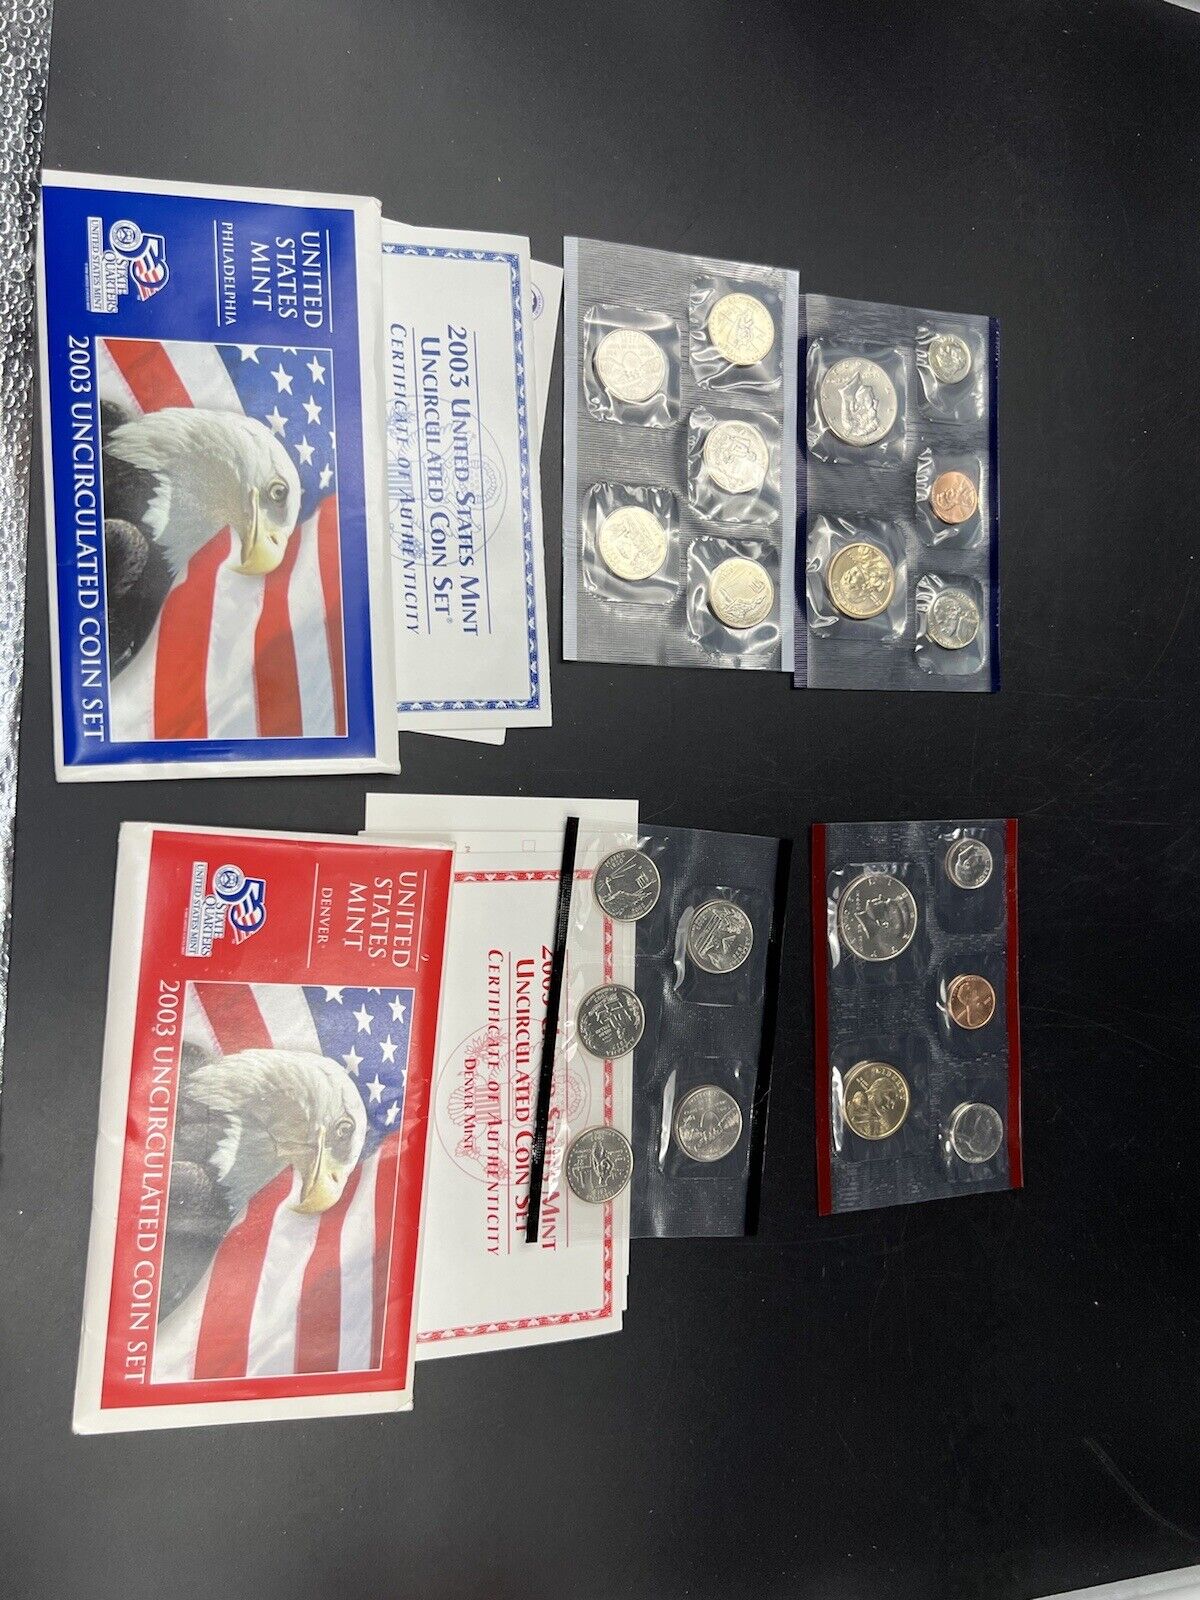 2003  P & D Mint Set BU Unc CLAD Coins United States US Mint OGP